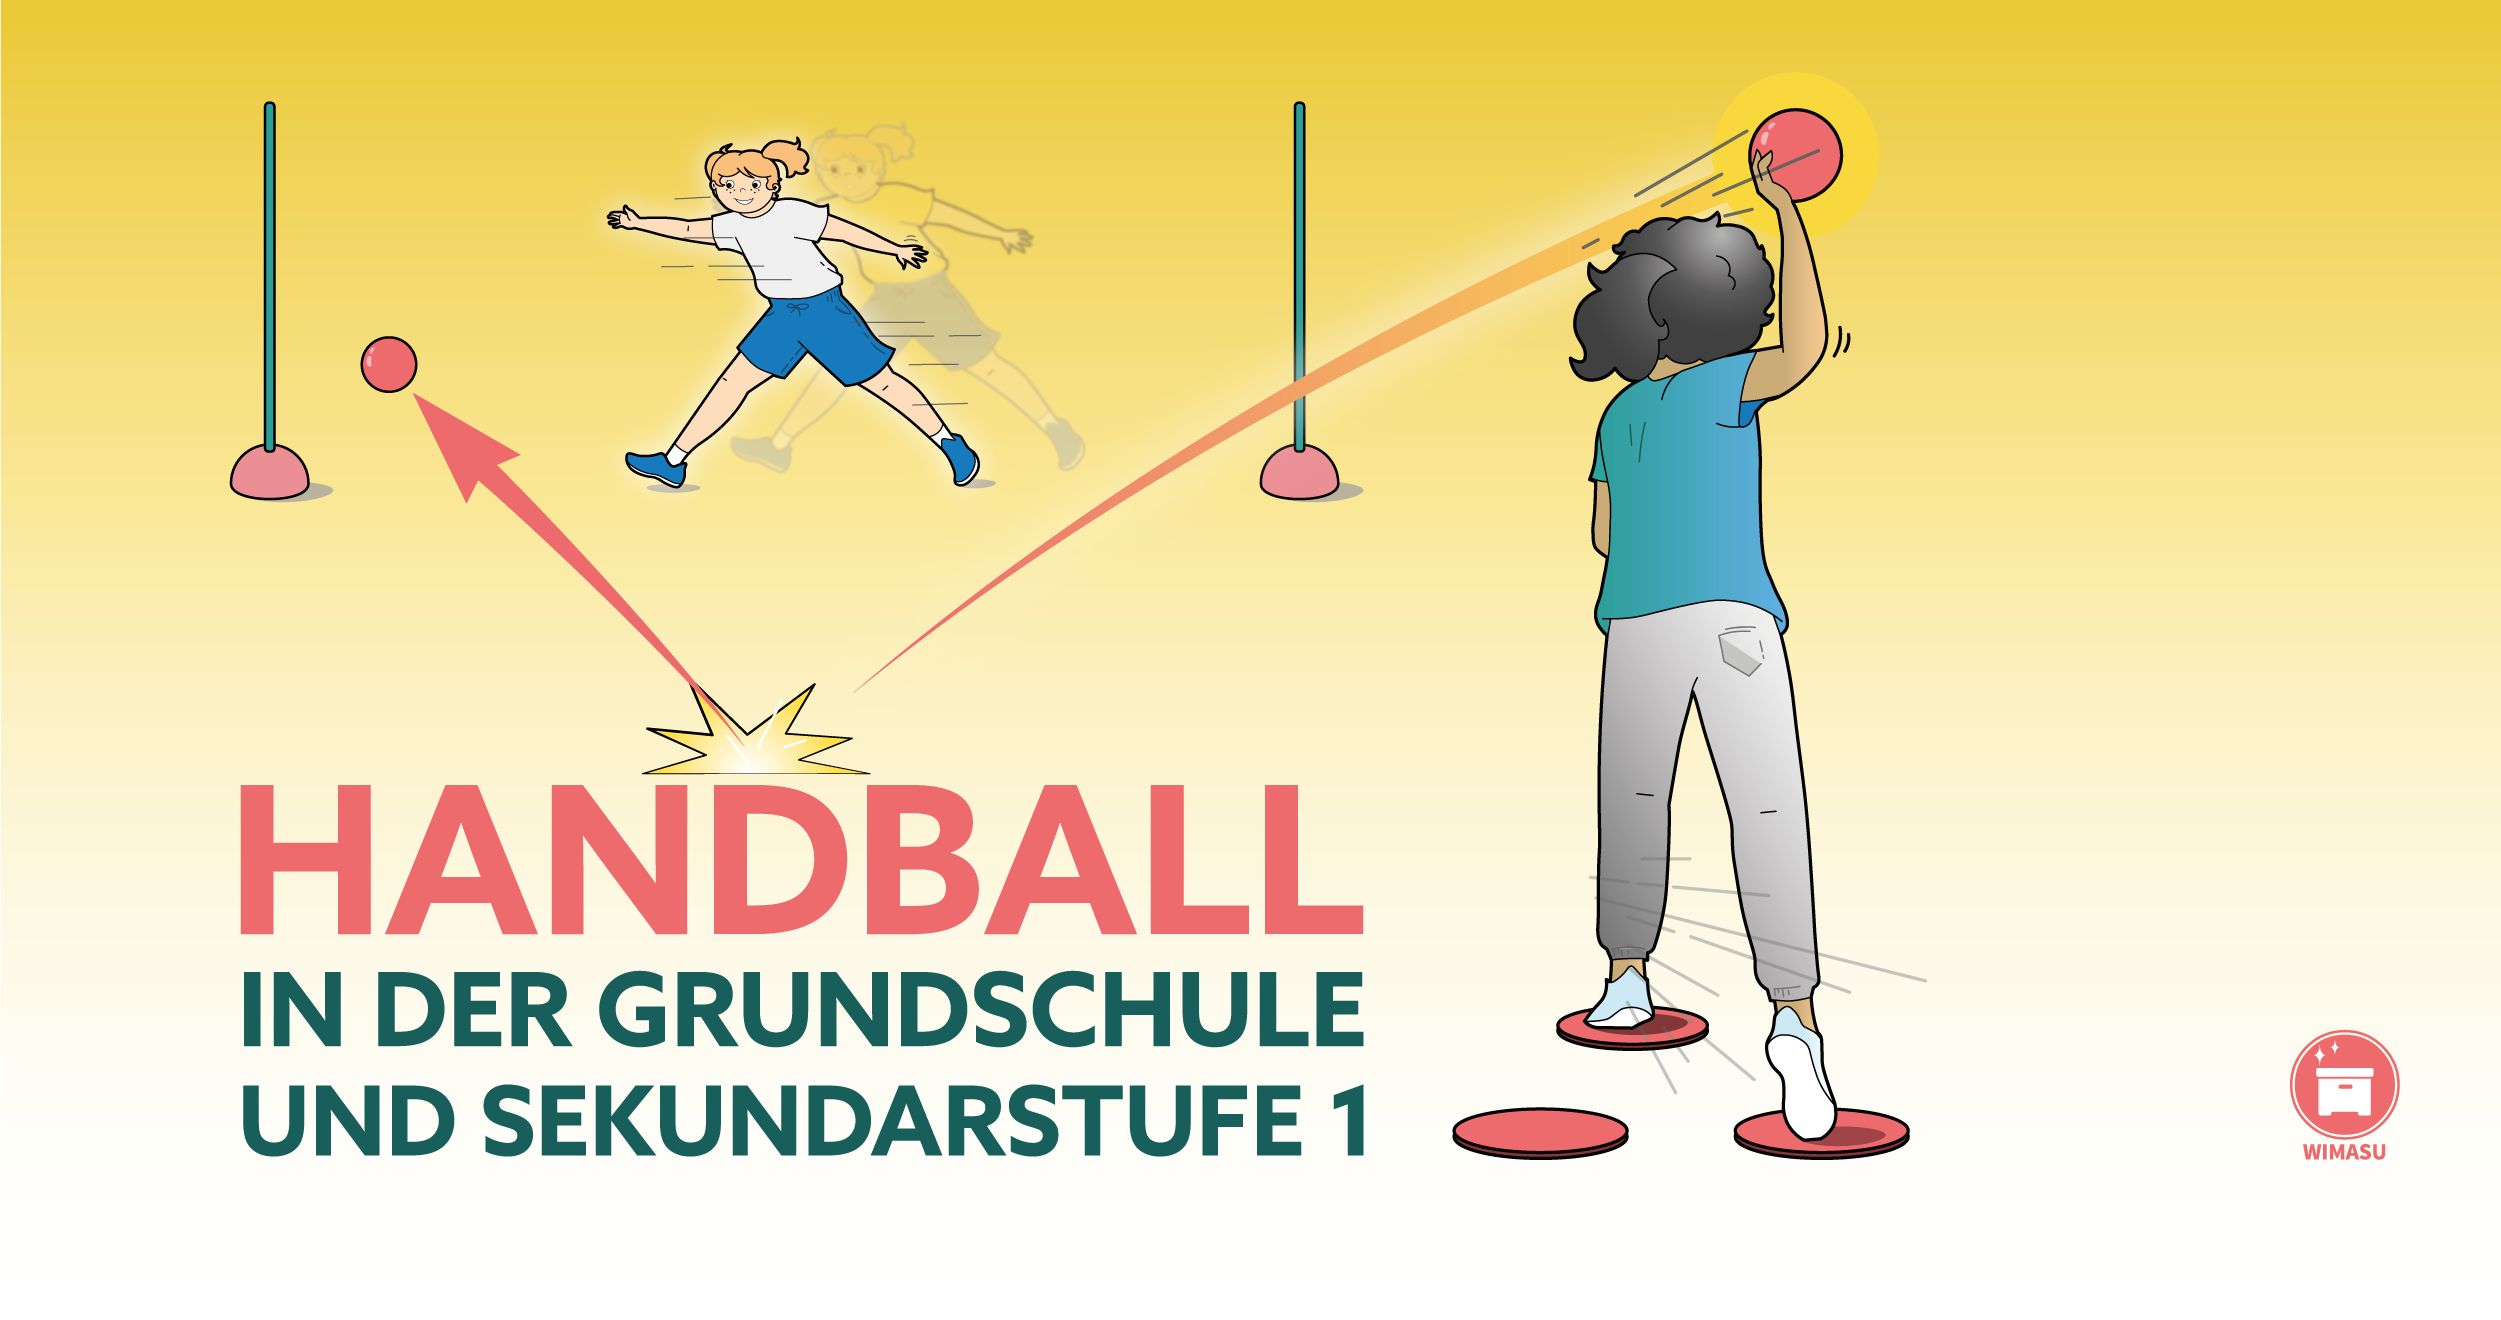 Handball in der Grundschule und Sekundarstufe 1 einführen